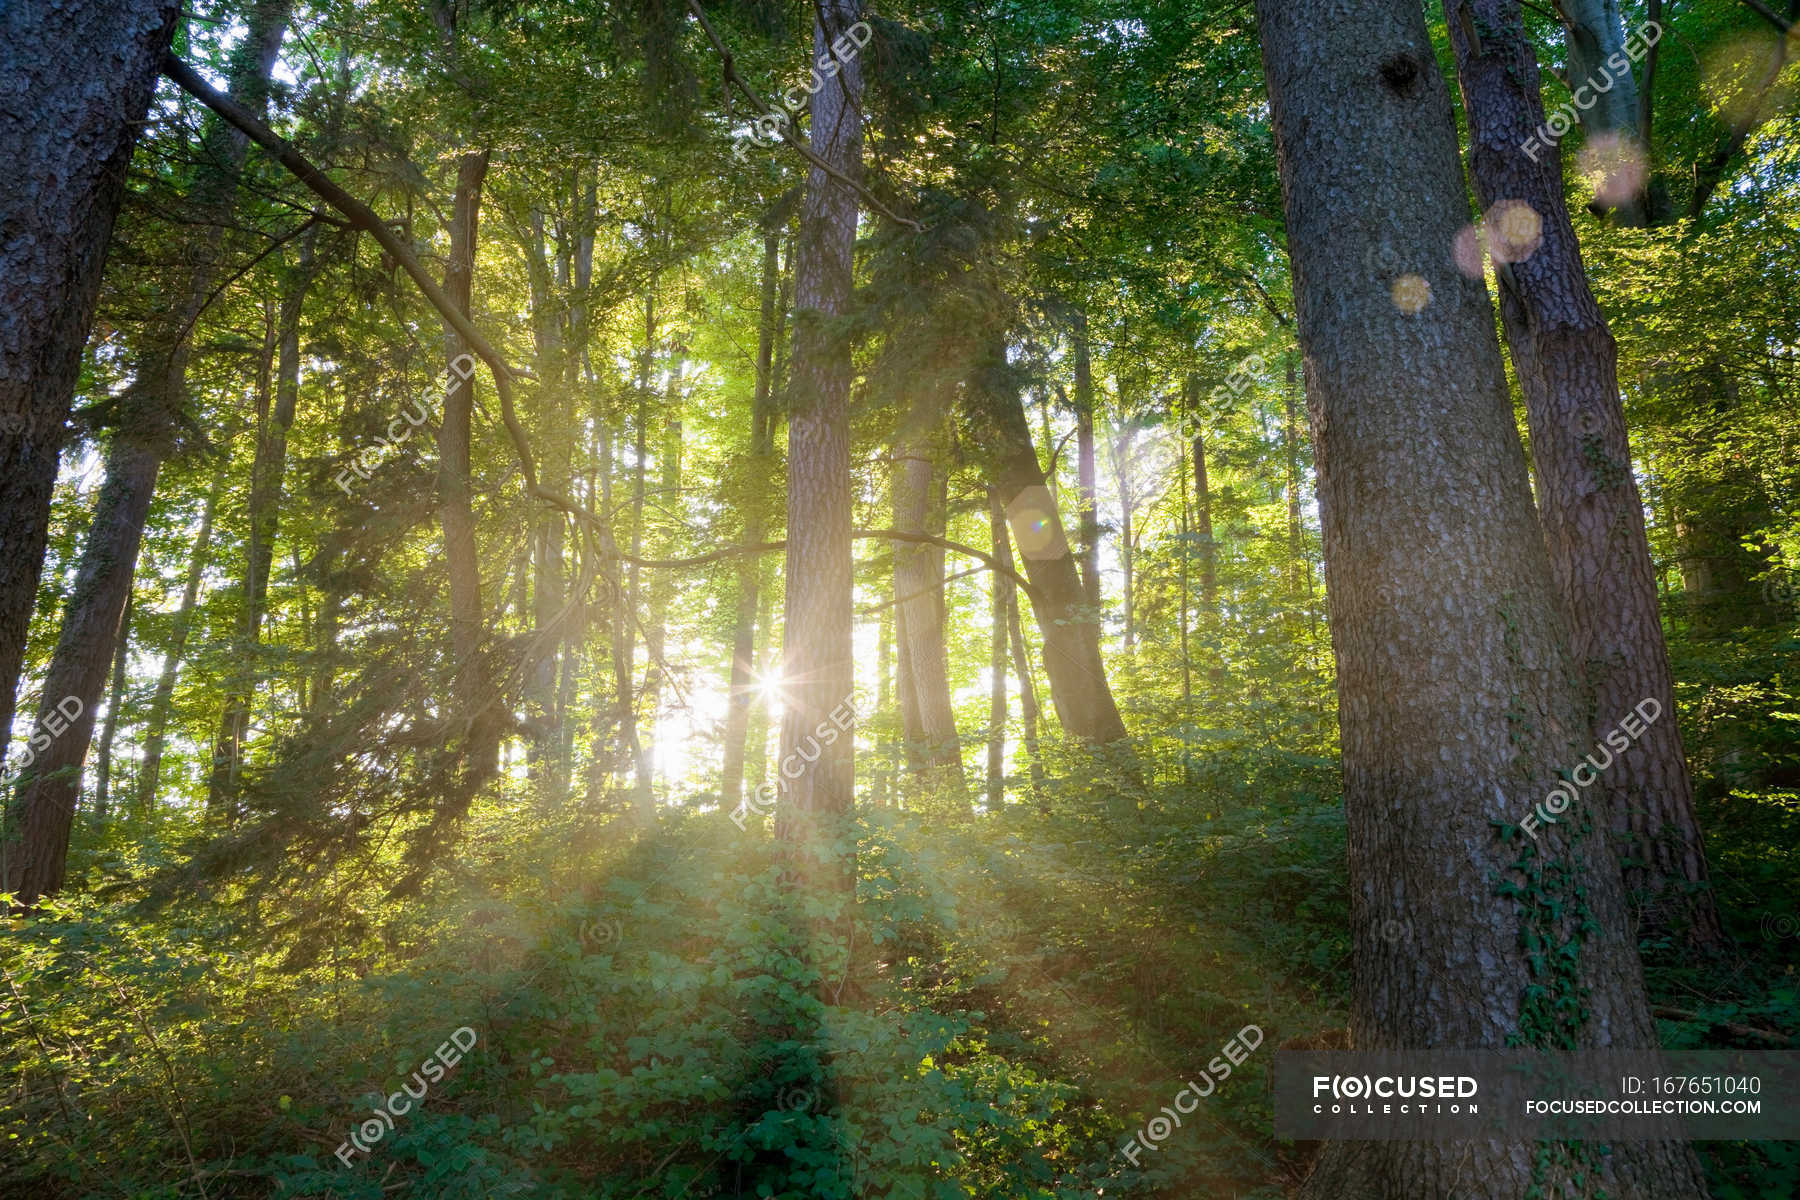 Sun Shining Through Trees — Sunlight Variety Stock Photo 167651040